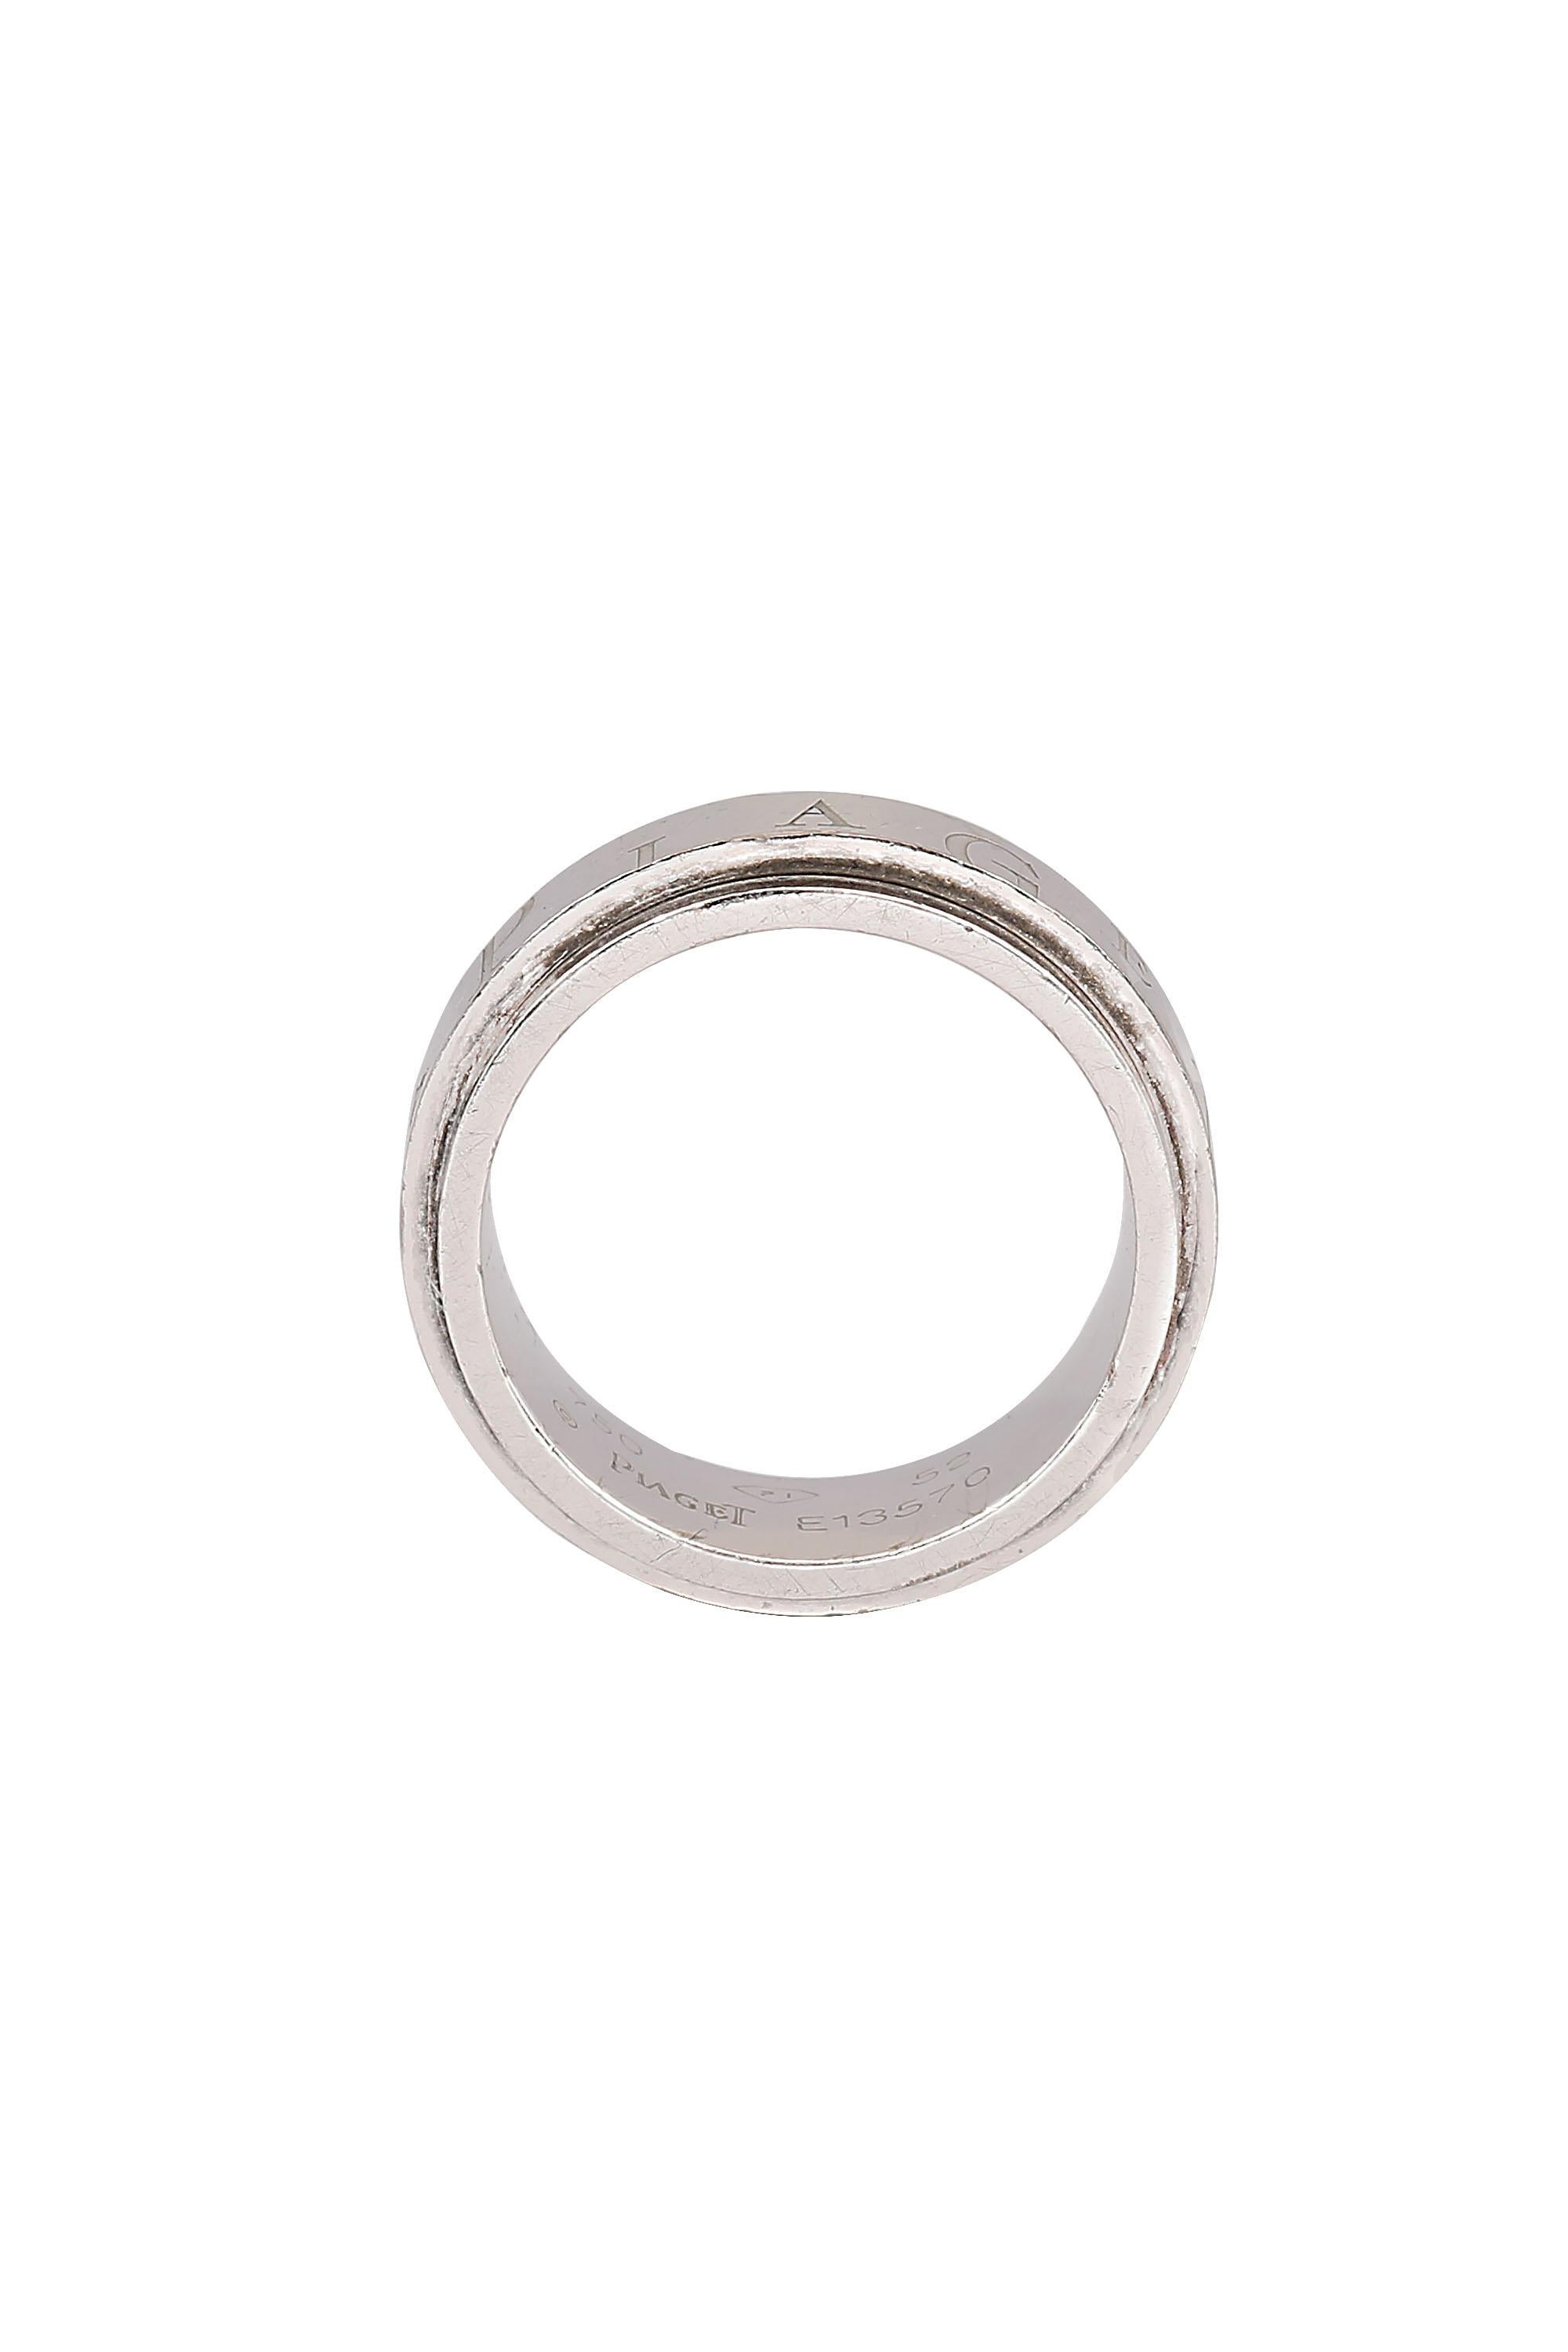 Très élégante bague de collection à motif de logo Piaget. L'anneau central est serti de deux diamants ronds de taille brillant d'un poids total d'environ 0,06 carat. Fabriquée en or blanc 18 carats, elle est estampillée 750 et numérotée E13570.